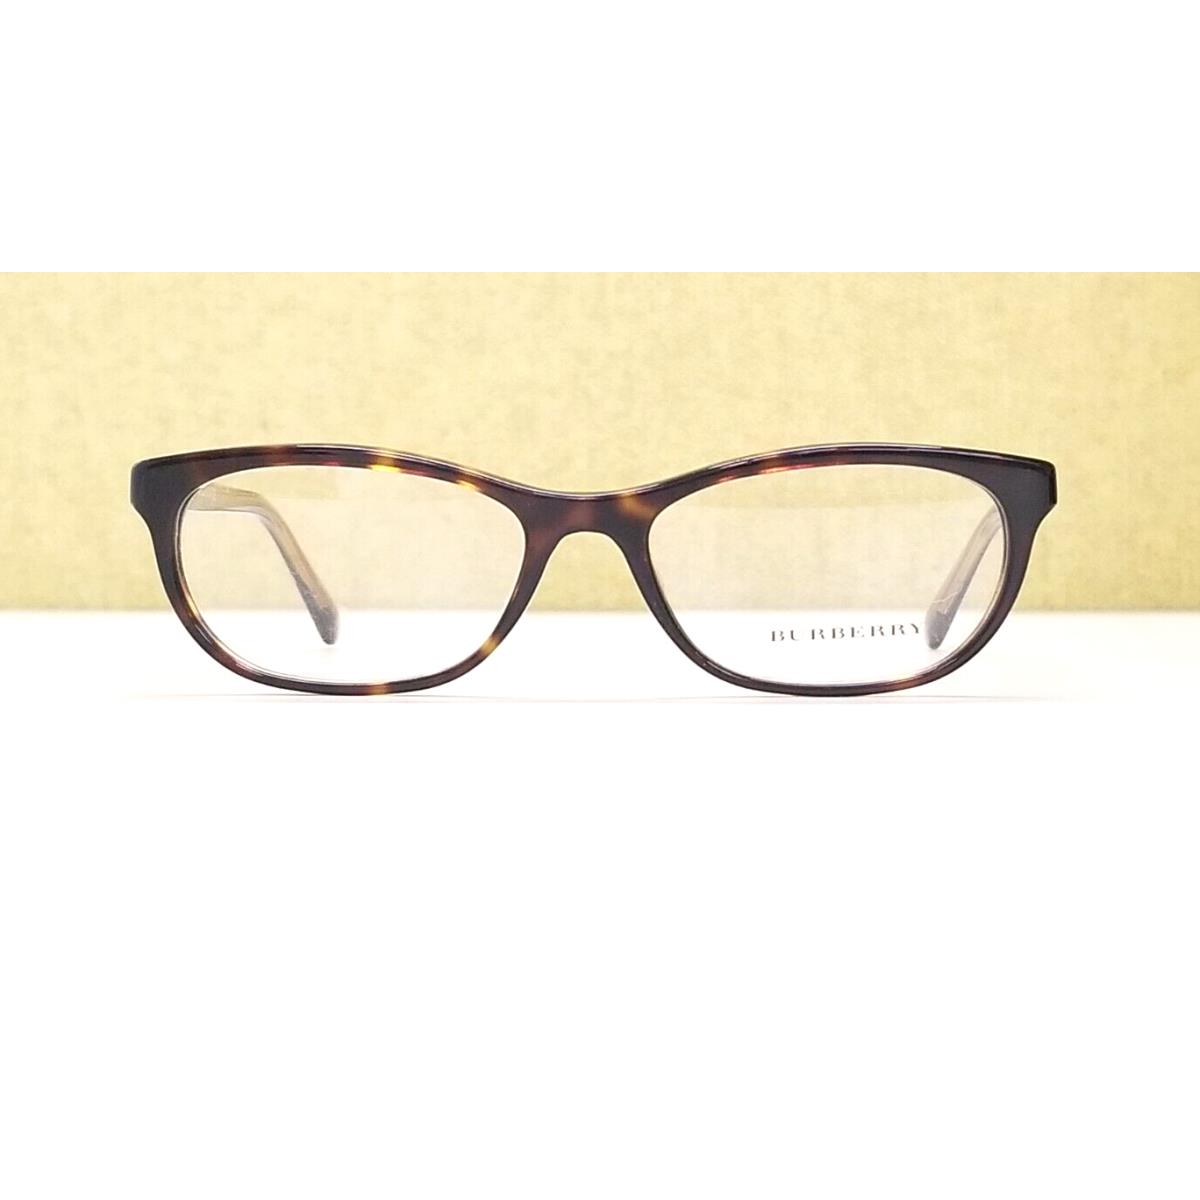 Burberry eyeglasses  - Tortoise, Bronze Frame 0